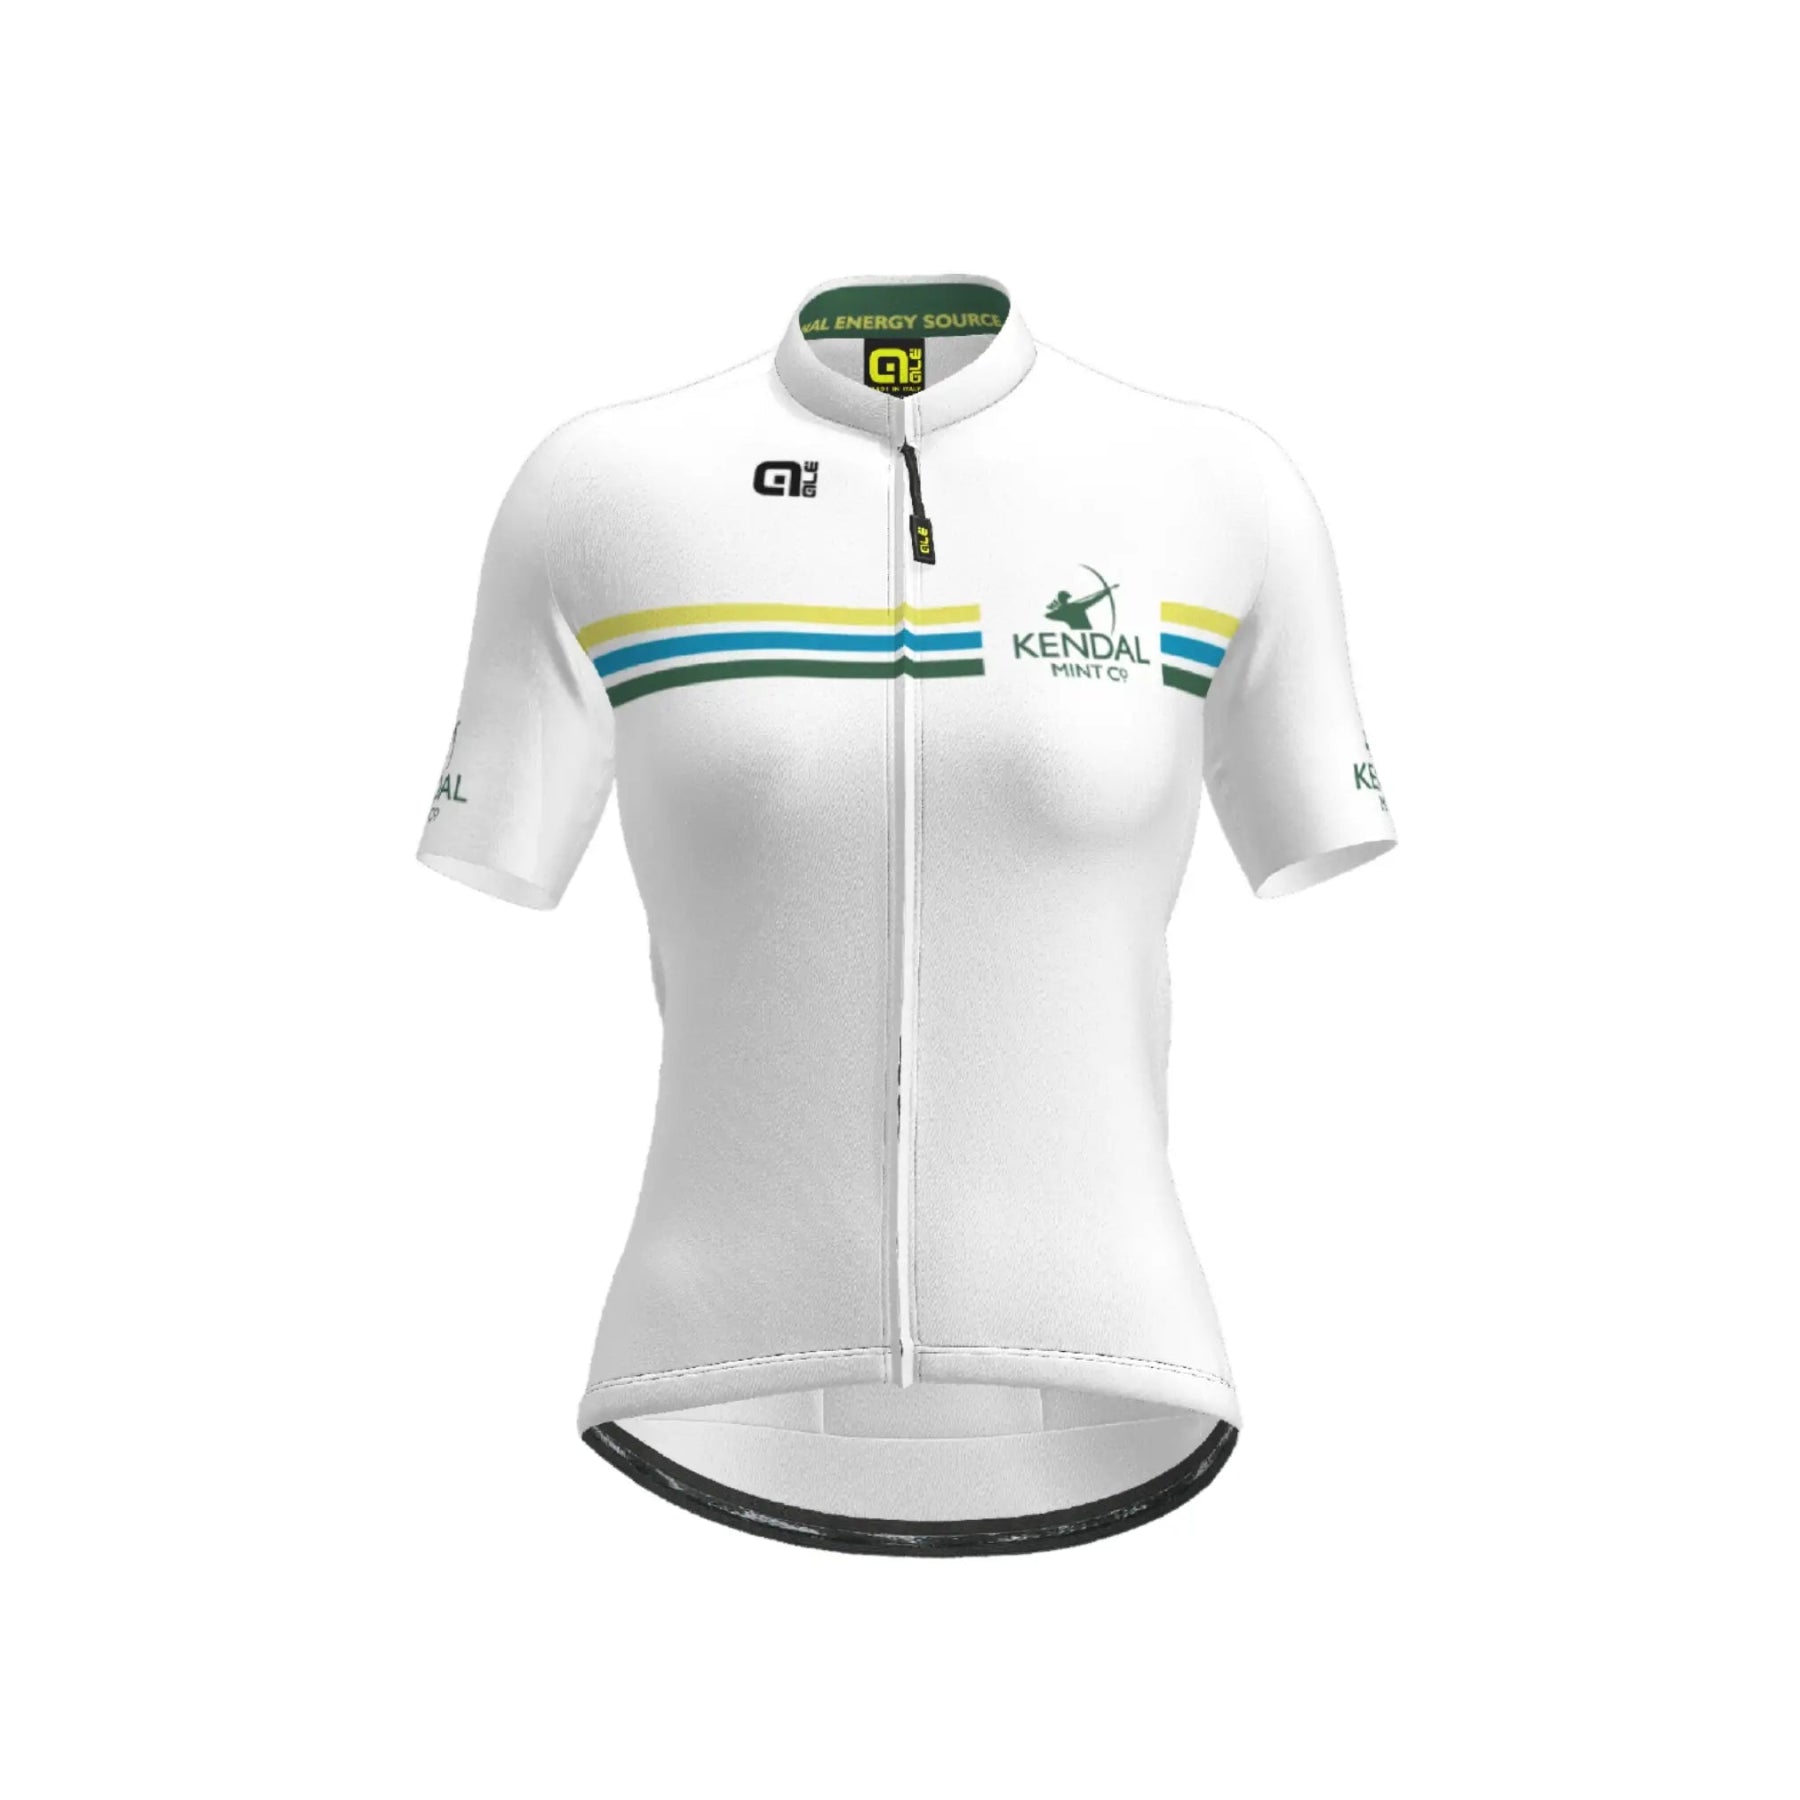 Kendal Mint Co X Alé Cycling Jersey - Women's (Brand New - Limited Edition) - Cycling Jersey - Kendal Mint Co® - XS